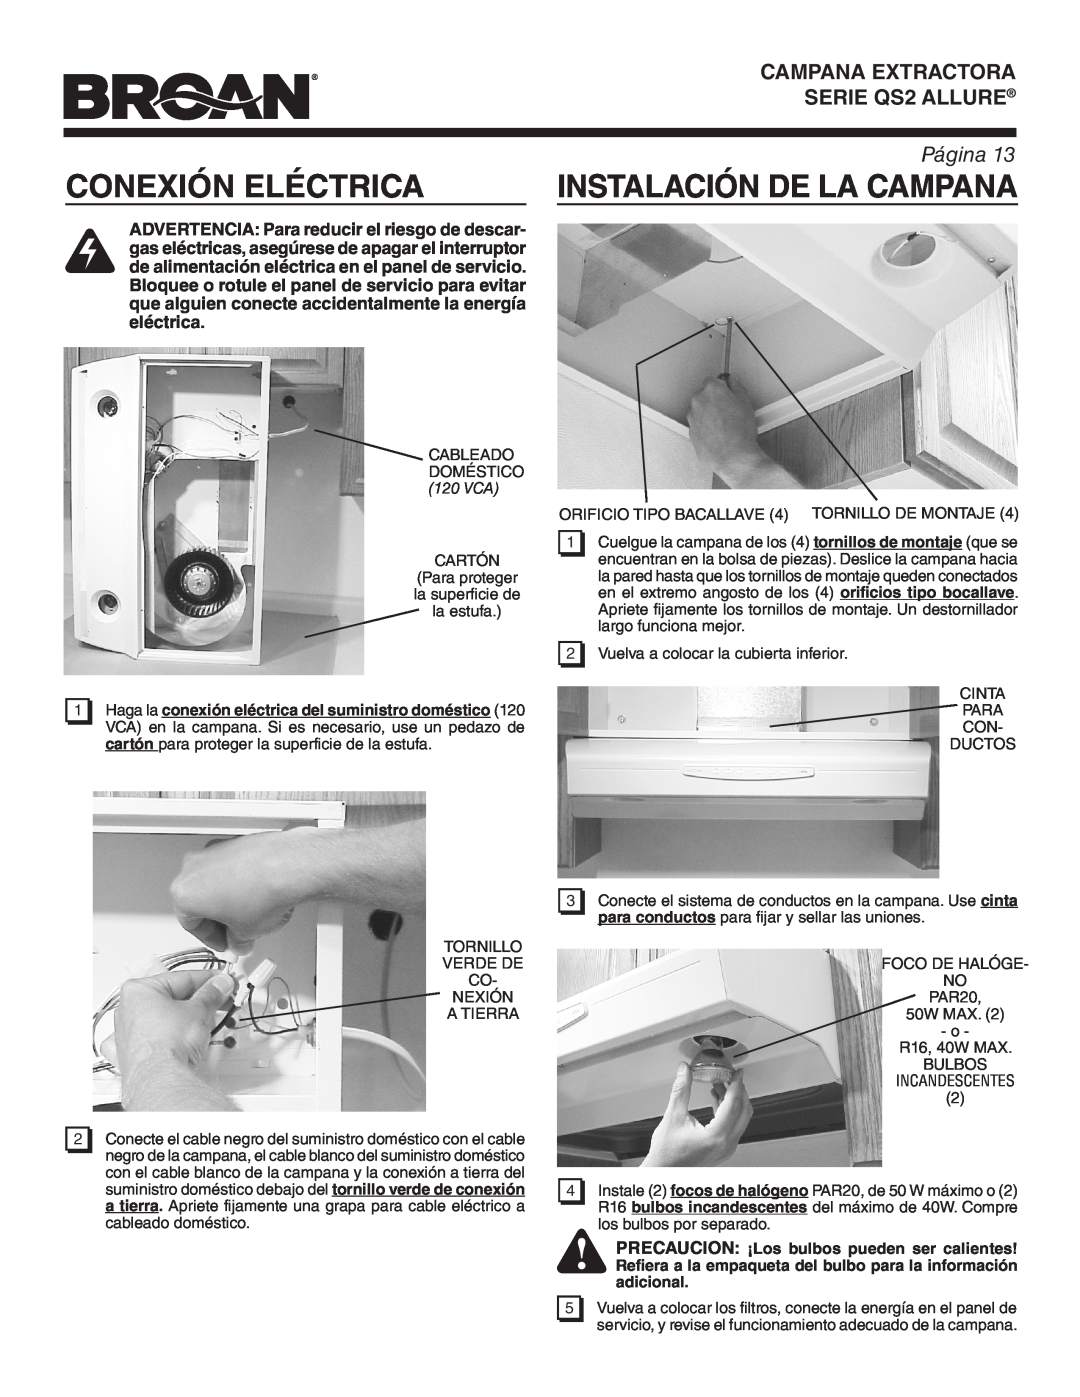 Broan QS242SS warranty Conexión Eléctrica, Instalación De La Campana, Campana Extractora, SERIE QS2 ALLURE, Página 